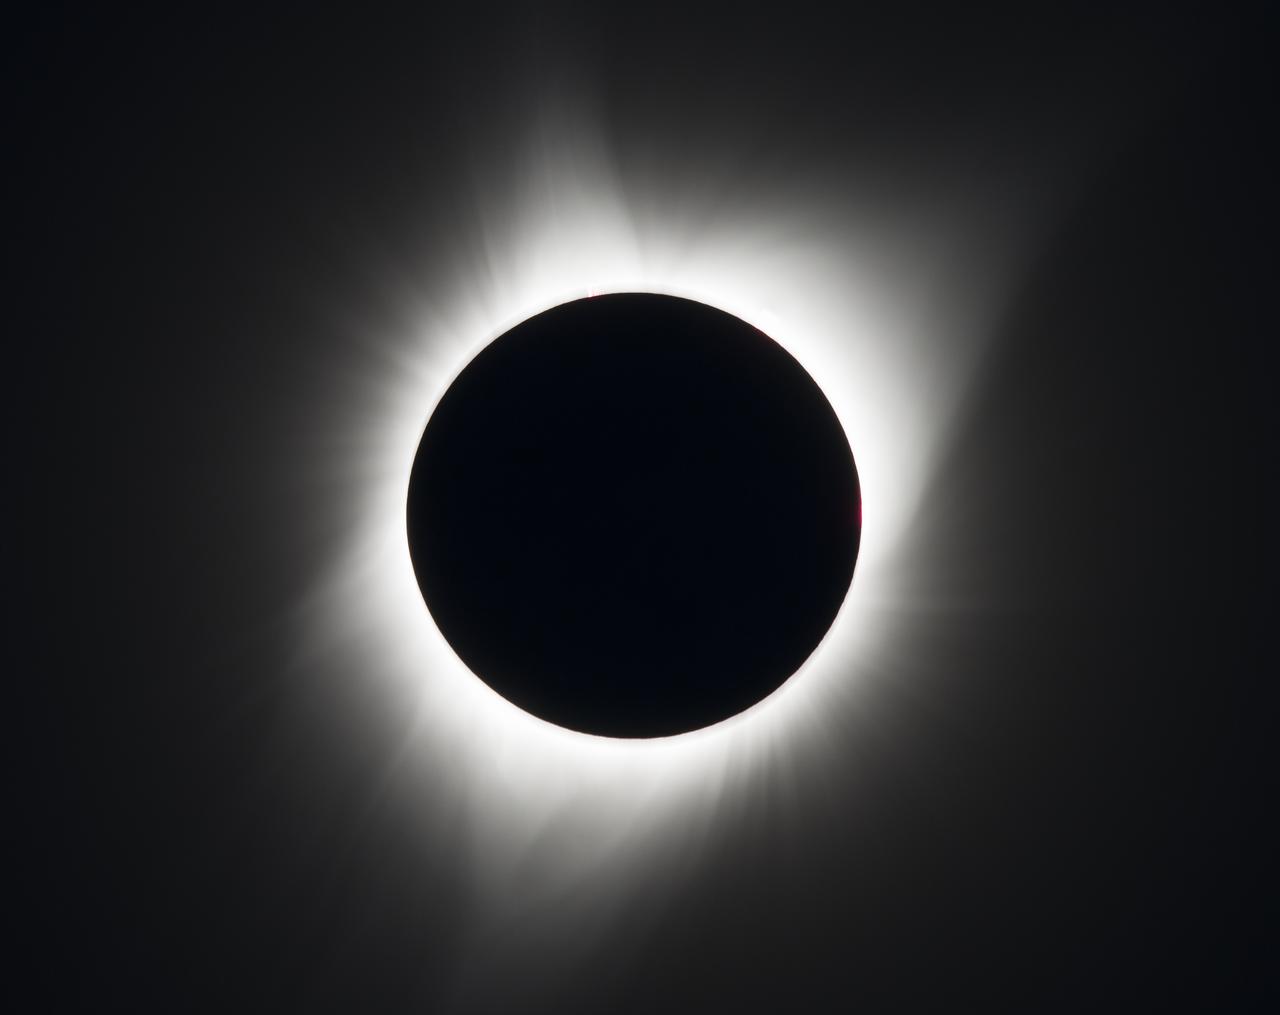 Un eclipse solar total se ve el lunes 21 de agosto de 2017 por encima de Madras, Oregón. La formación del círculo oscuro en el centro es la Luna que está bloqueando el Sol con sus rayos de color blanco asomando por detrás de la Luna. En el fondo se ve la oscuridad del espacio.